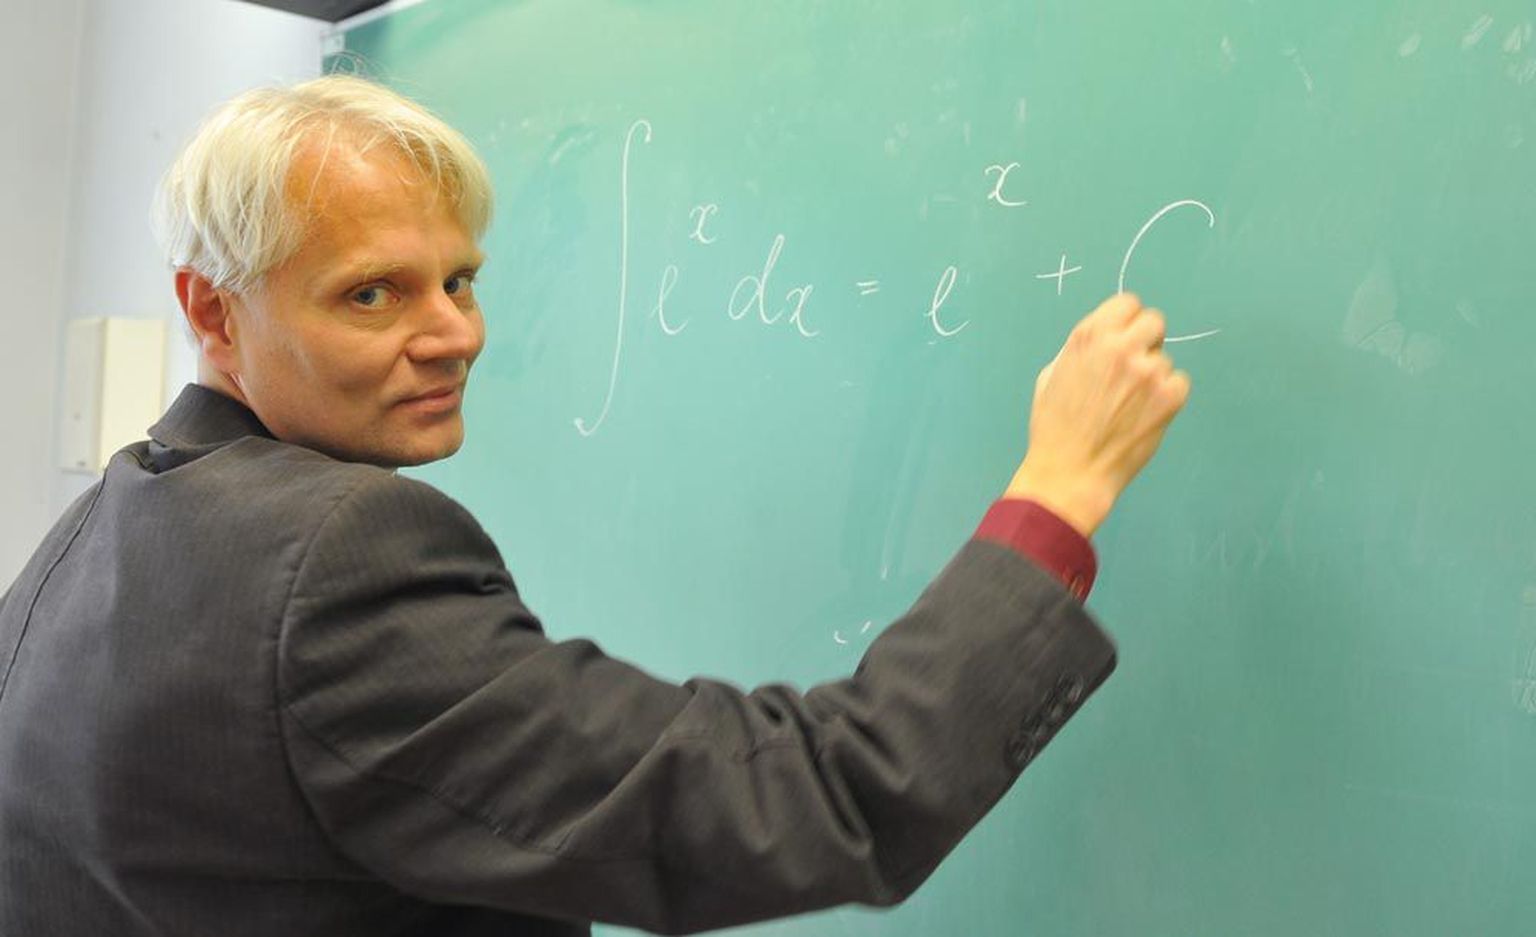 Tallinna reaalkooli matemaatikaõpetaja Villu Raja sõnul meenutab     uus õppekava talle seda matemaatikat, mida ta ise 80ndatel koolis õppis, sest vahepeal tehti ­aineprogrammi lihtsalt kergemaks.